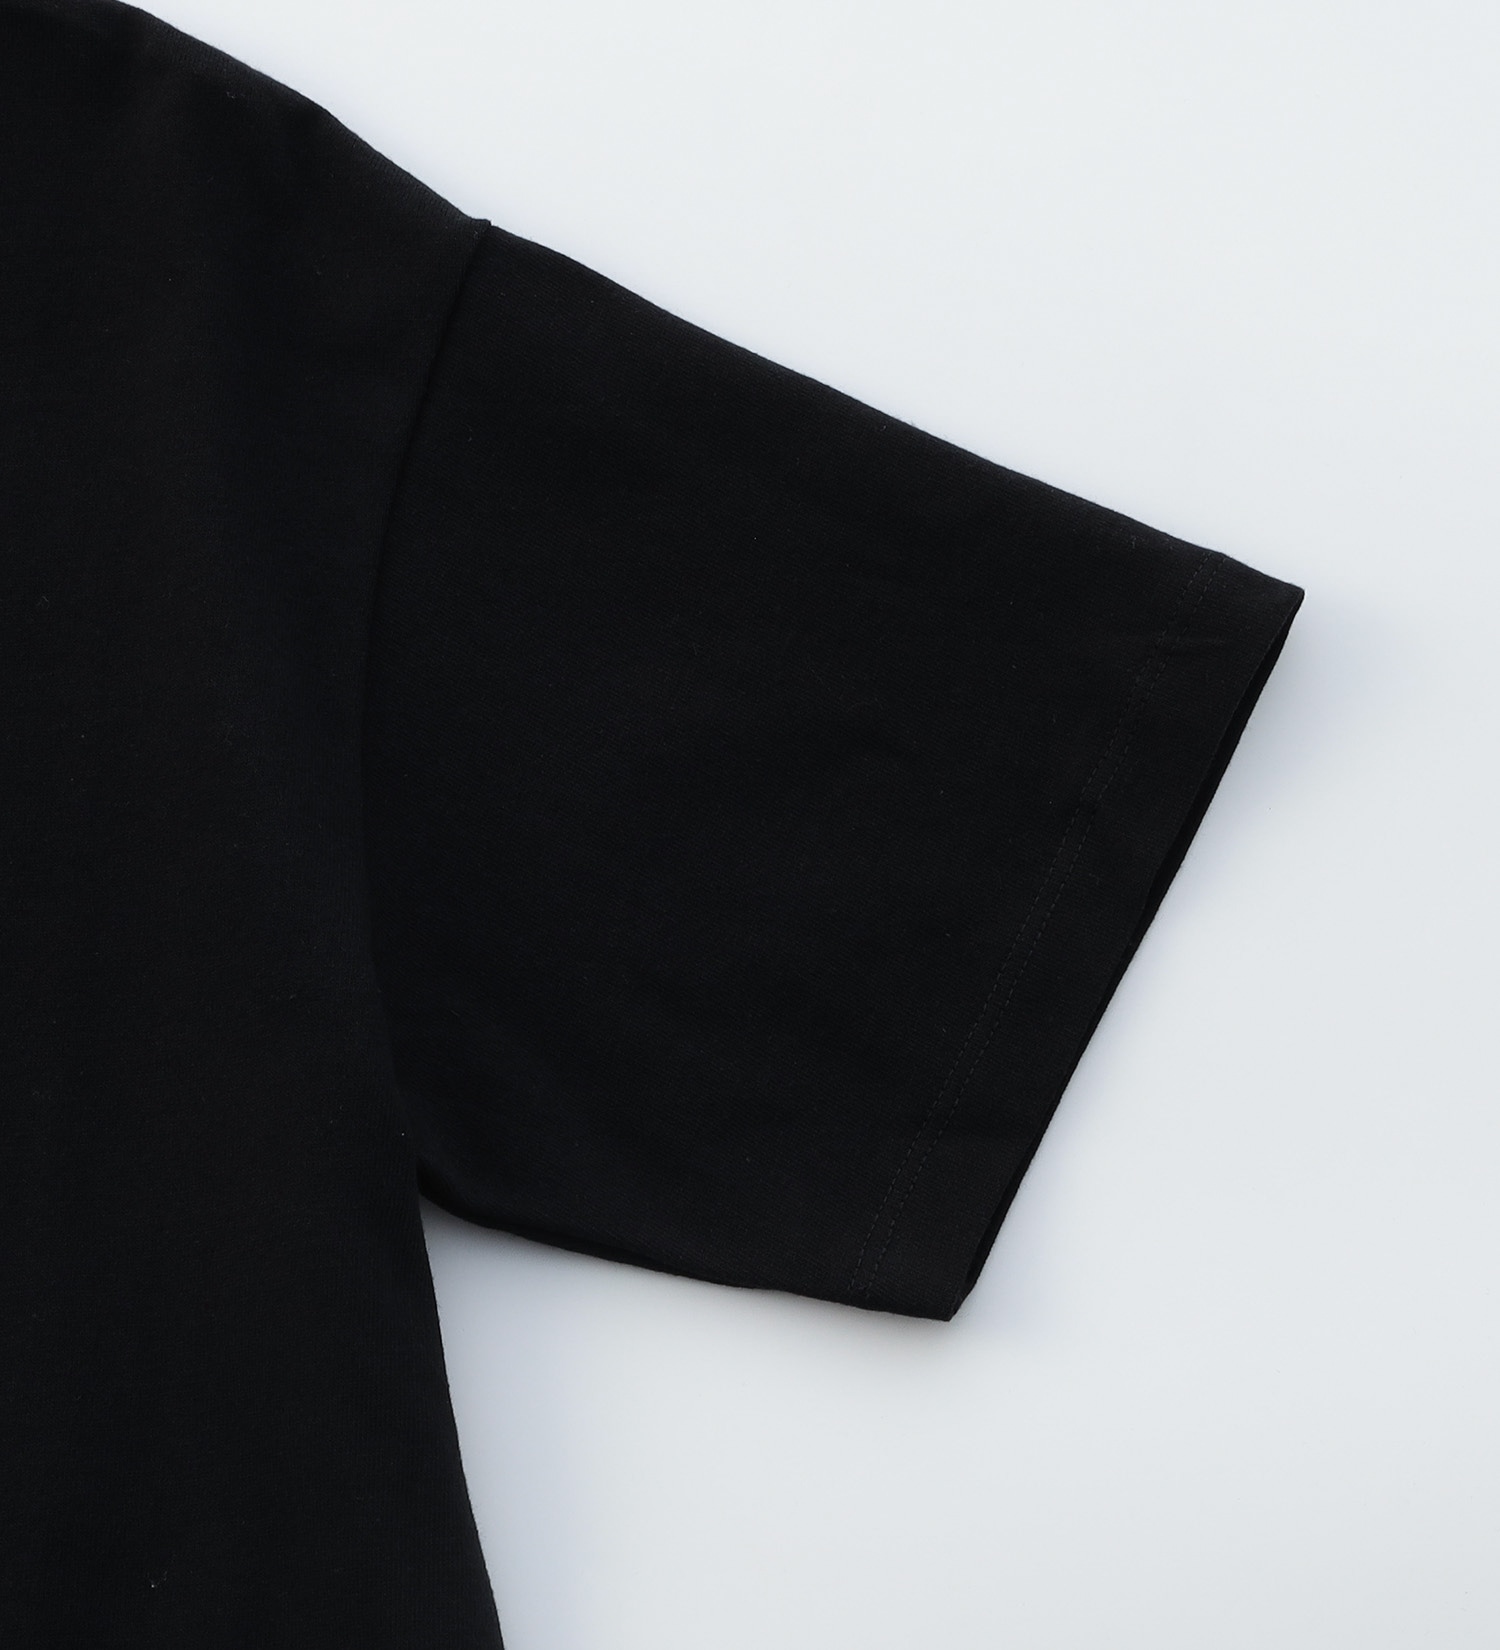 EDWIN(エドウイン)の【BLACKFRIDAY】手書き風プリントTシャツ 半袖（コーヒー）【アウトレット店舗・WEB限定】|トップス/Tシャツ/カットソー/レディース|ブラック